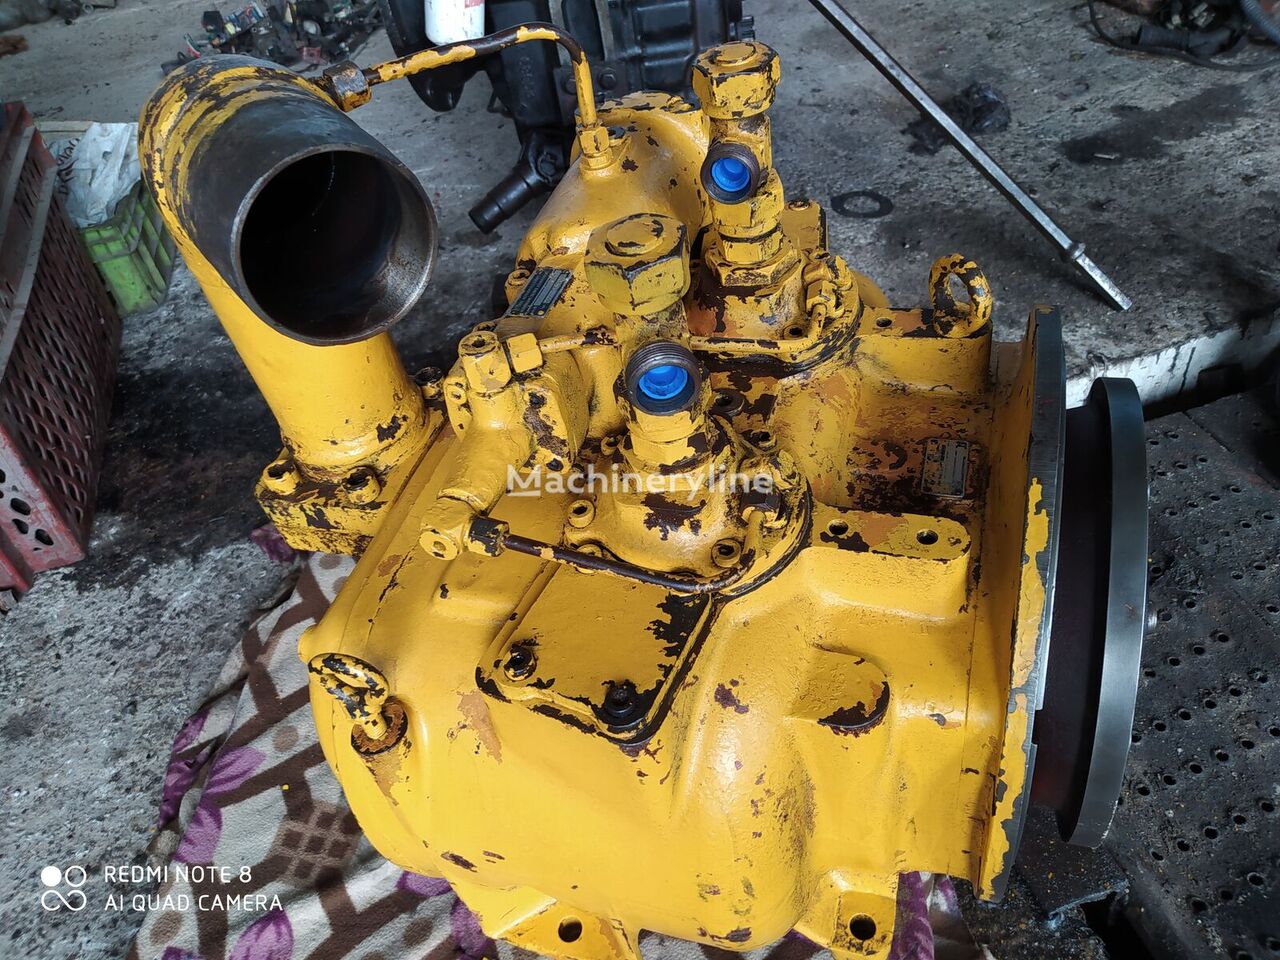 pompe hydraulique Linde 2 PV 105 4440700125 pour excavateur Liebherr R 904 anf Crane and ATLAS